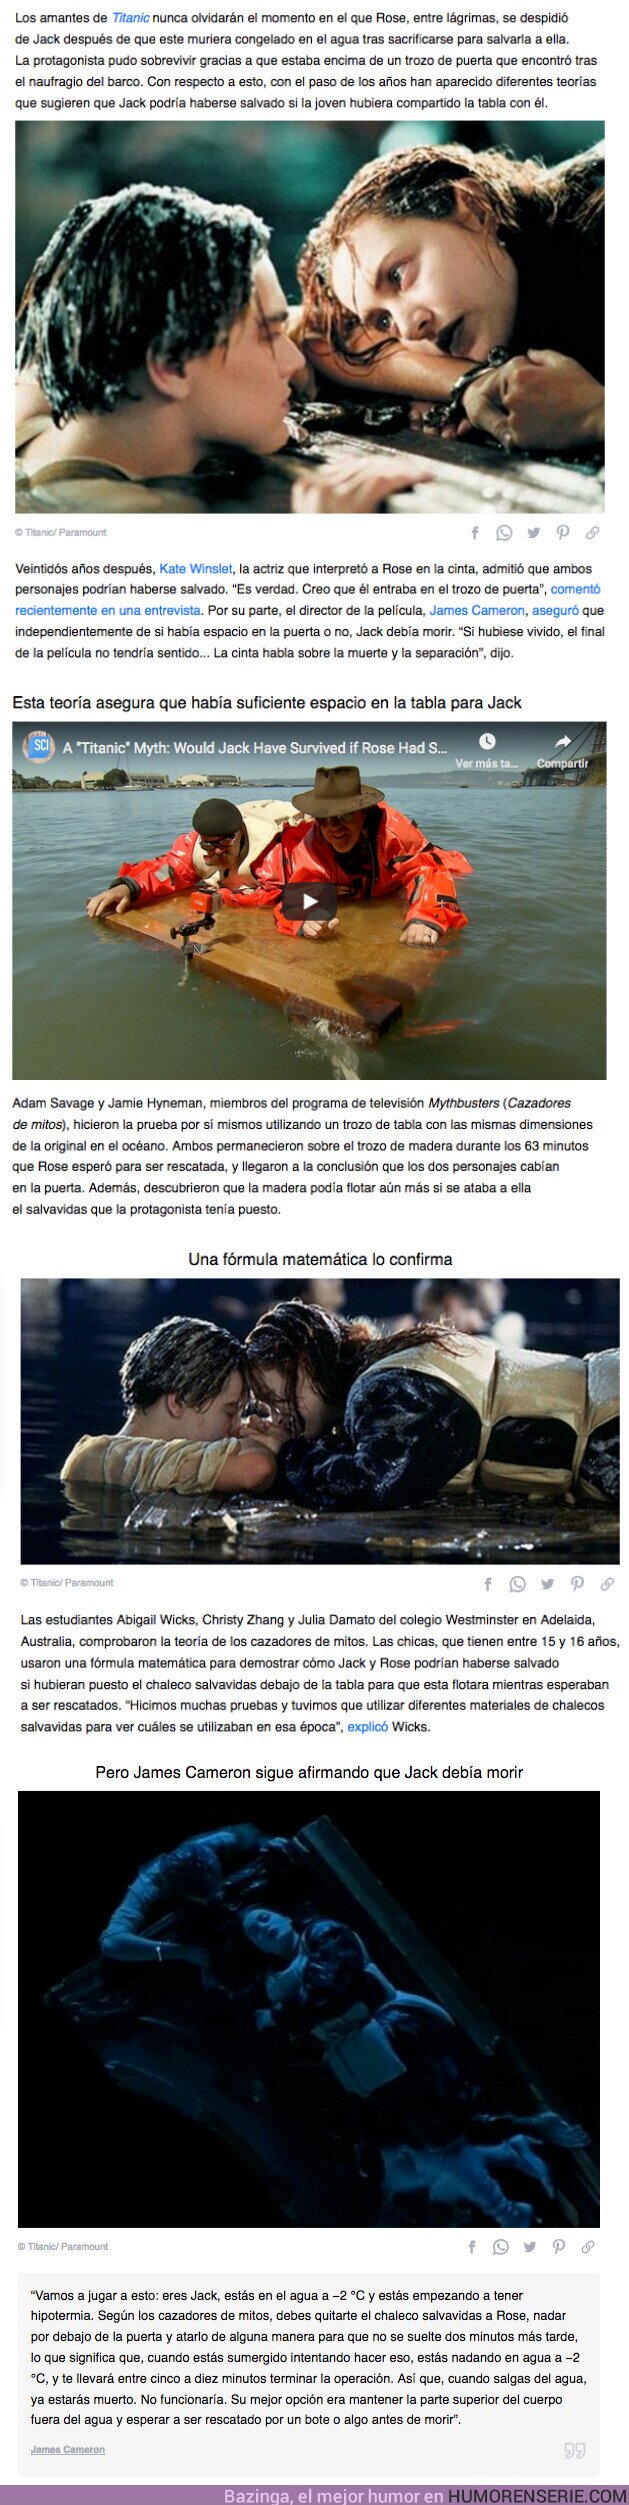 66020 - GALERÍA: Jack pudo haber sobrevivido en la película “Titanic”, y estas teorías lo demuestran